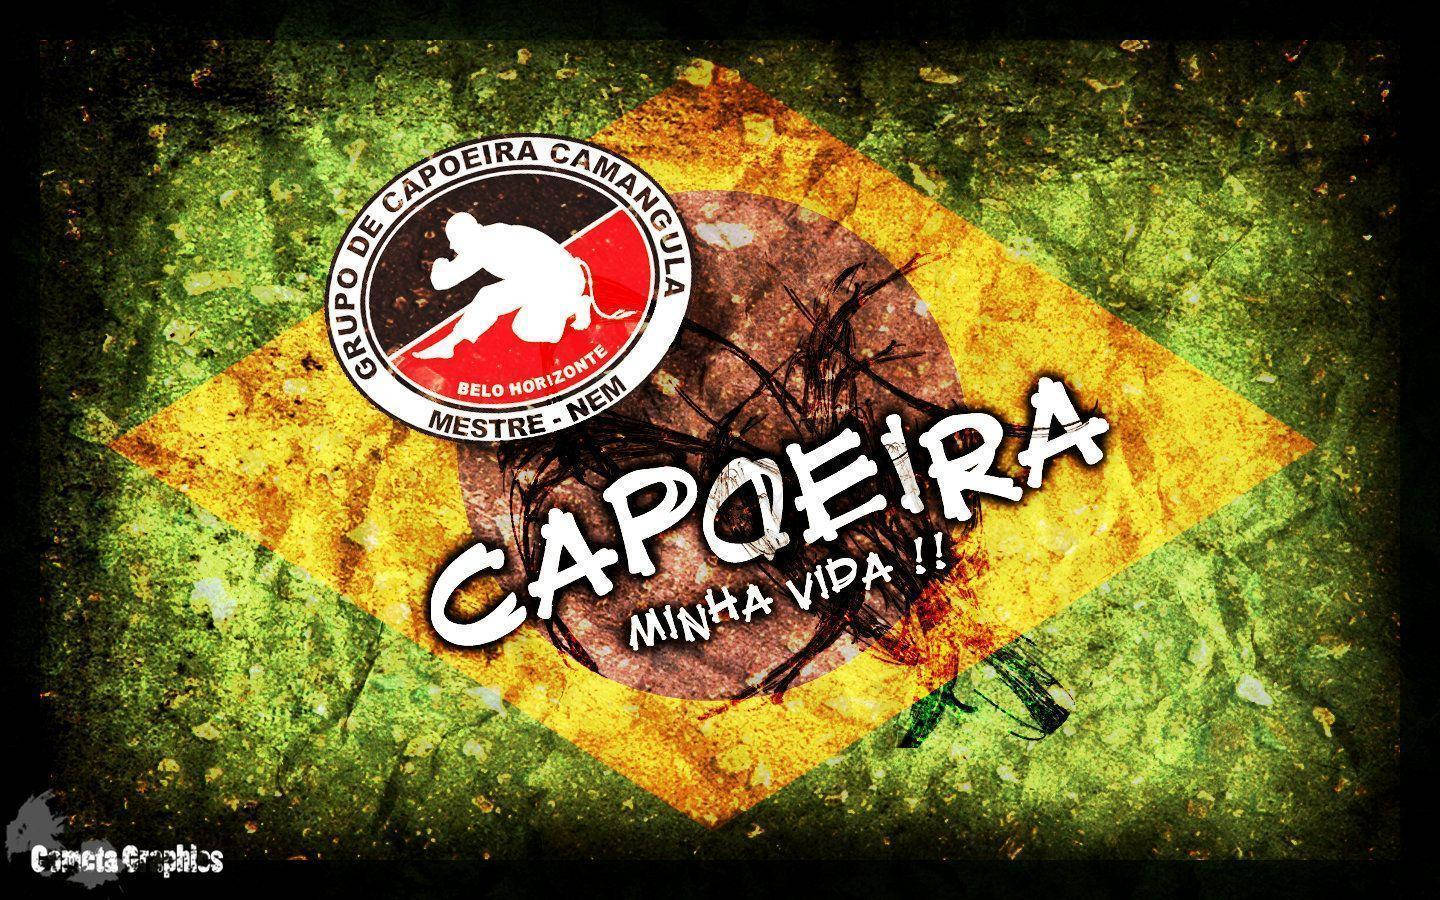 Posterdi Gruppo Di Capoeira Sfondo